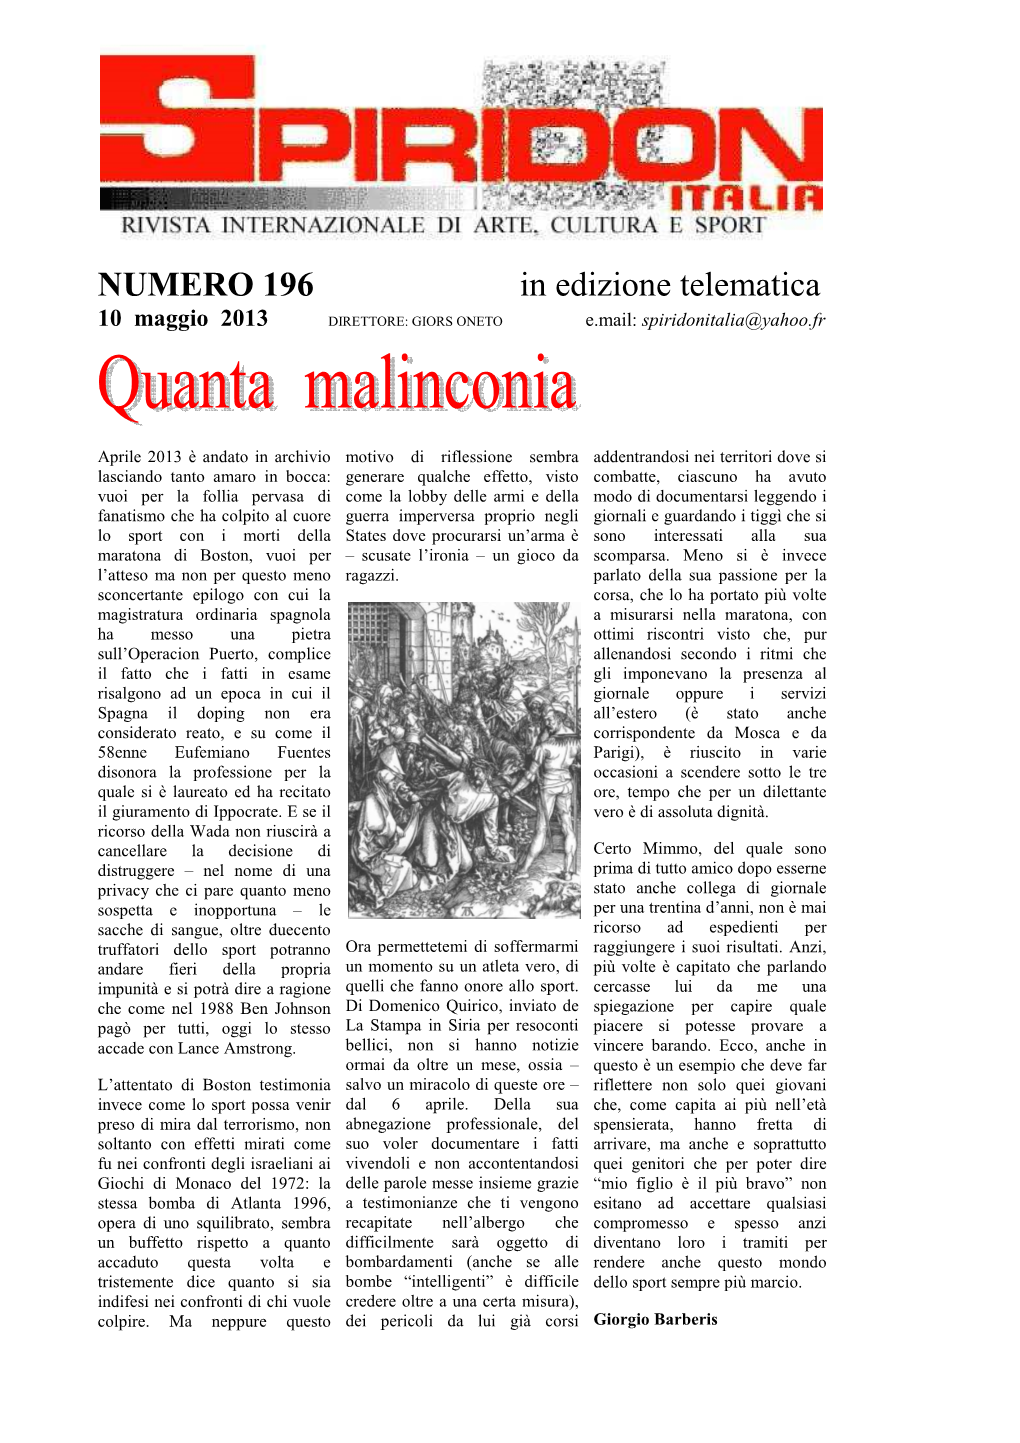 NUMERO 196 in Edizione Telematica 10 Maggio 2013 DIRETTORE: GIORS ONETO E.Mail: Spiridonitalia@Yahoo.Fr